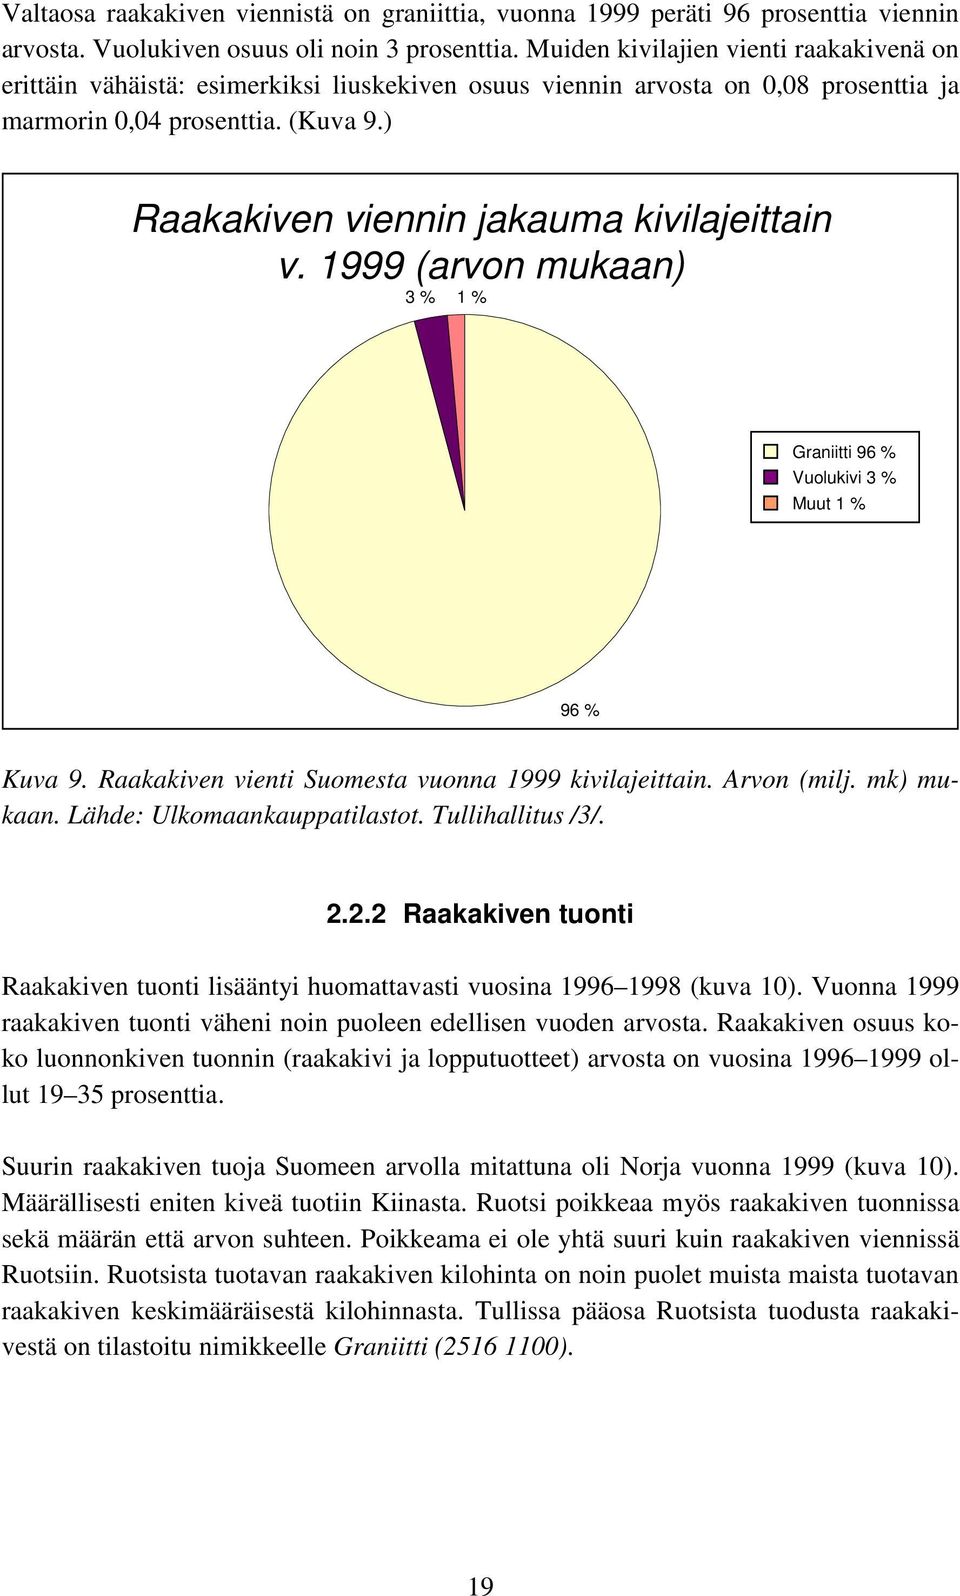 ) Raakakiven viennin jakauma kivilajeittain v. 1999 (arvon mukaan) 3 % 1 % Graniitti 96 % Vuolukivi 3 % Muut 1 % 96 % Kuva 9. Raakakiven vienti Suomesta vuonna 1999 kivilajeittain. Arvon (milj.